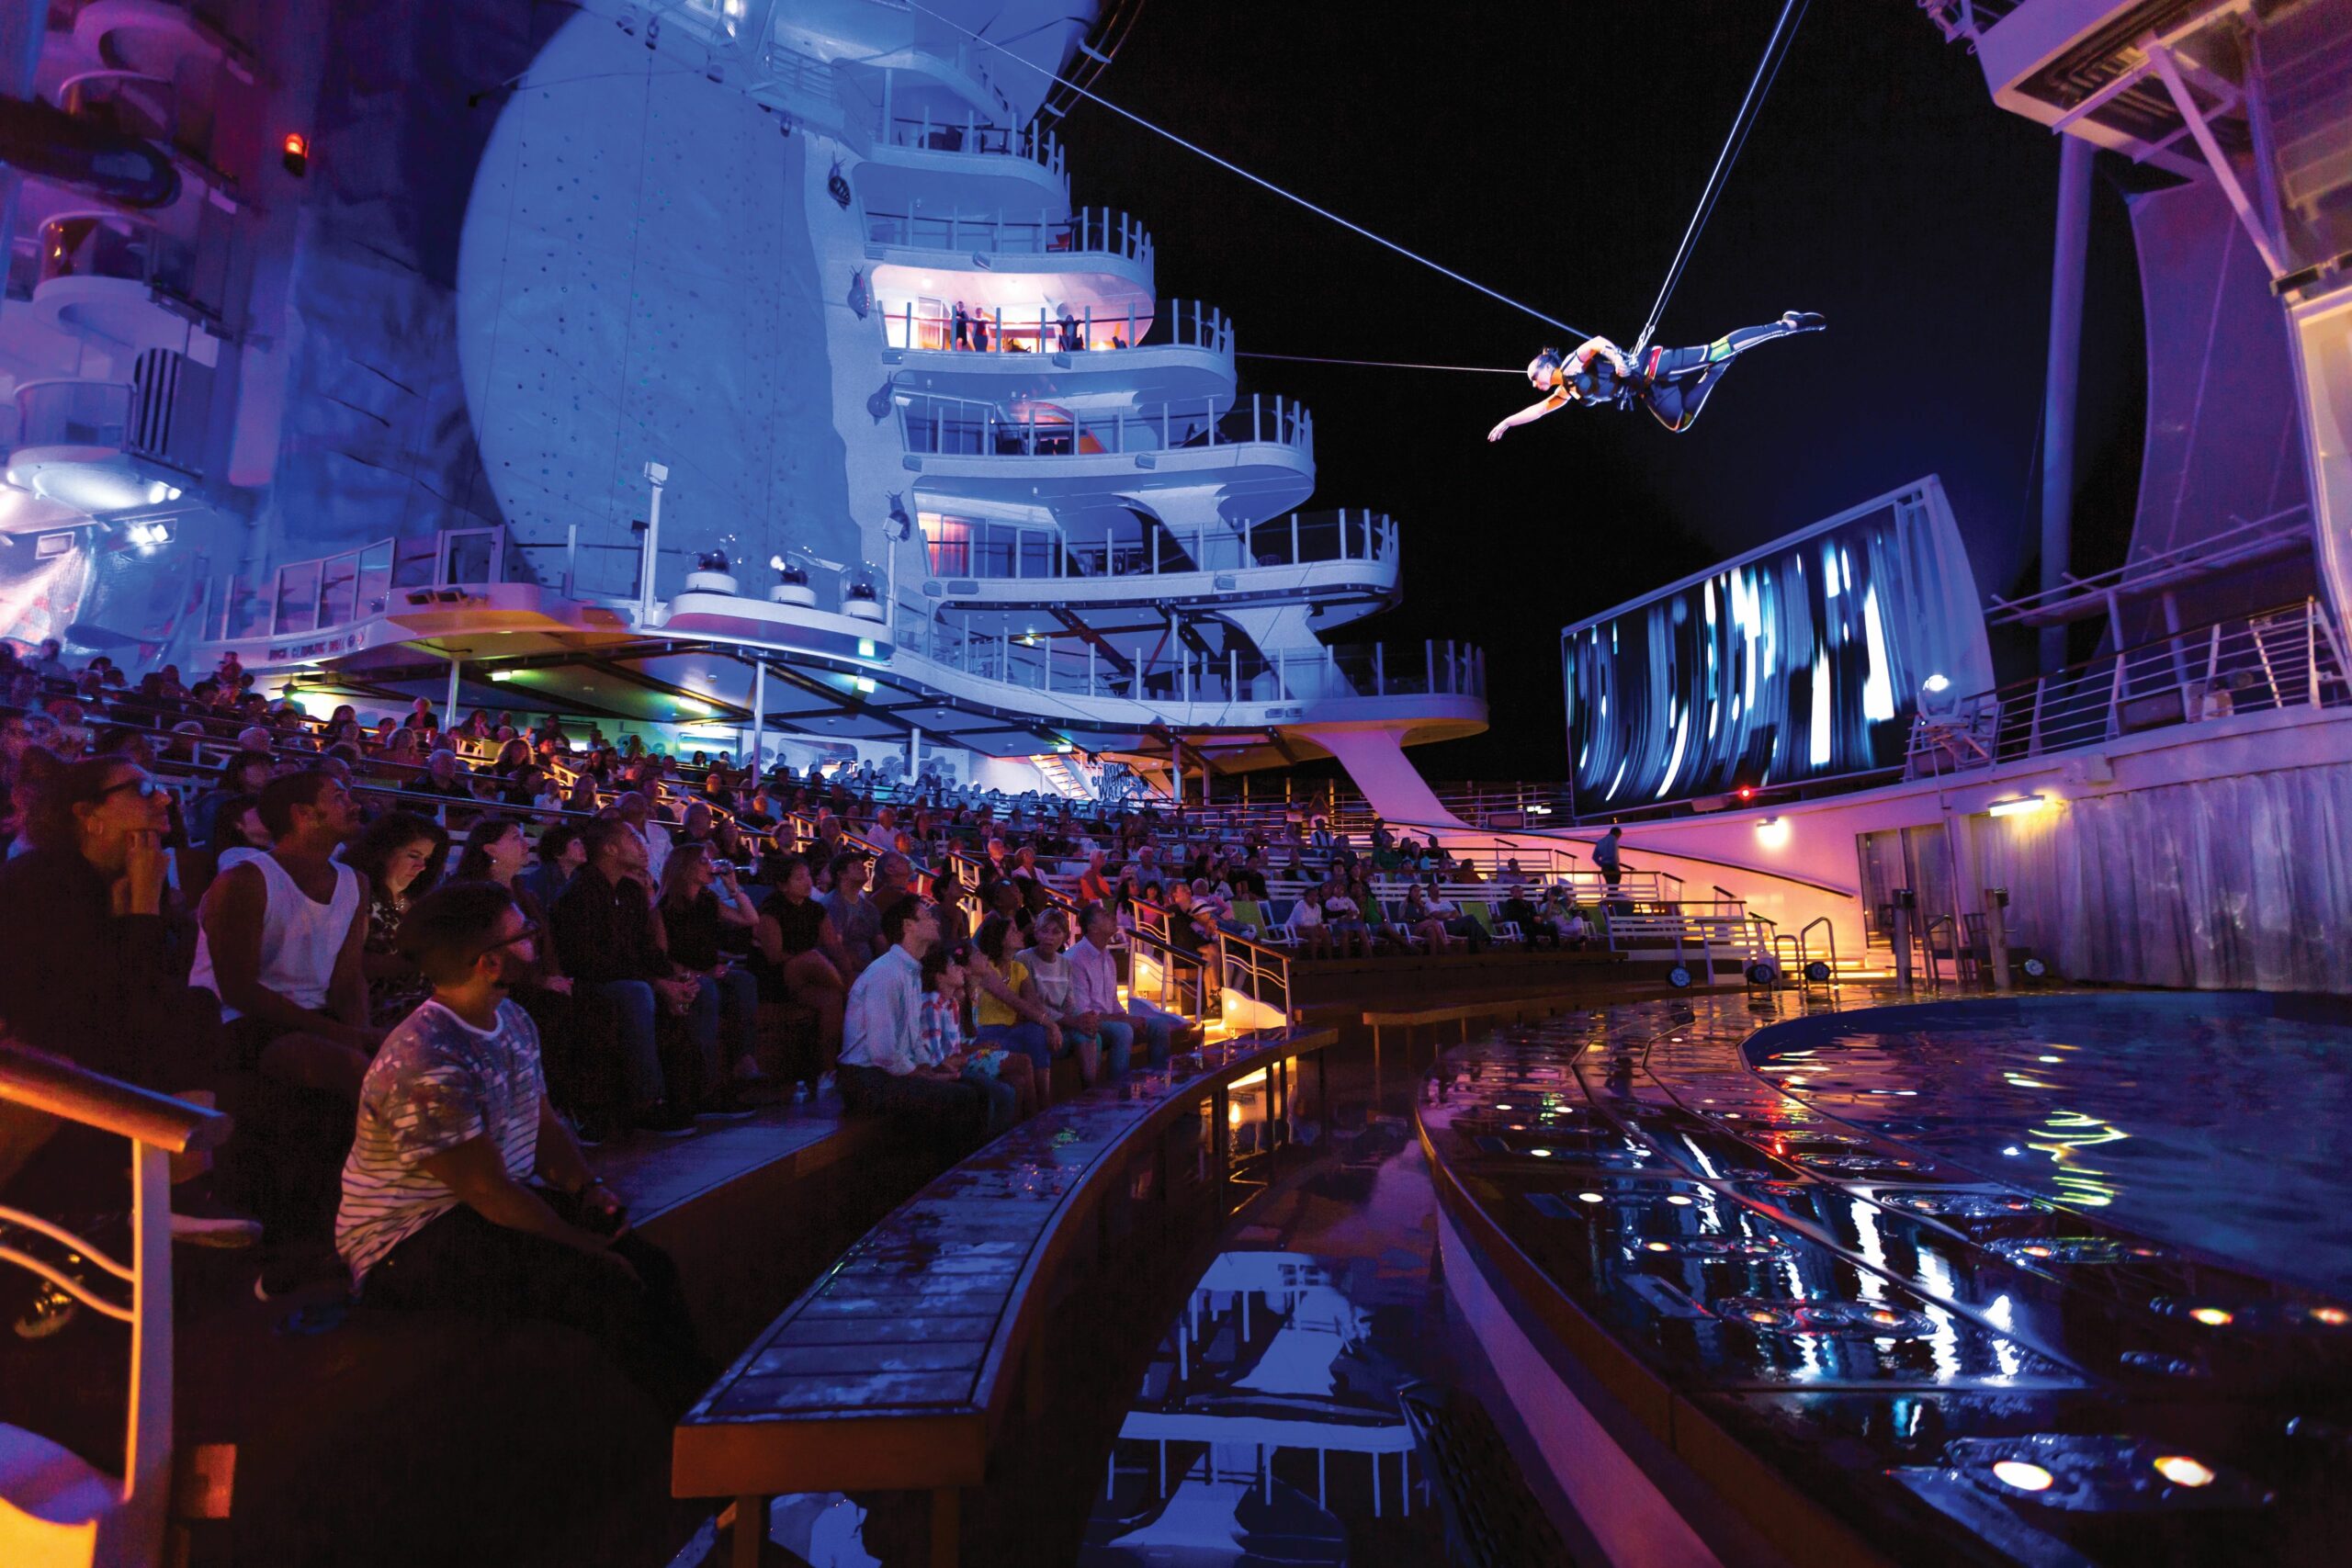 Aqua theater på Wonder of the Seas. Bildet er tatt av Royal Caribbean